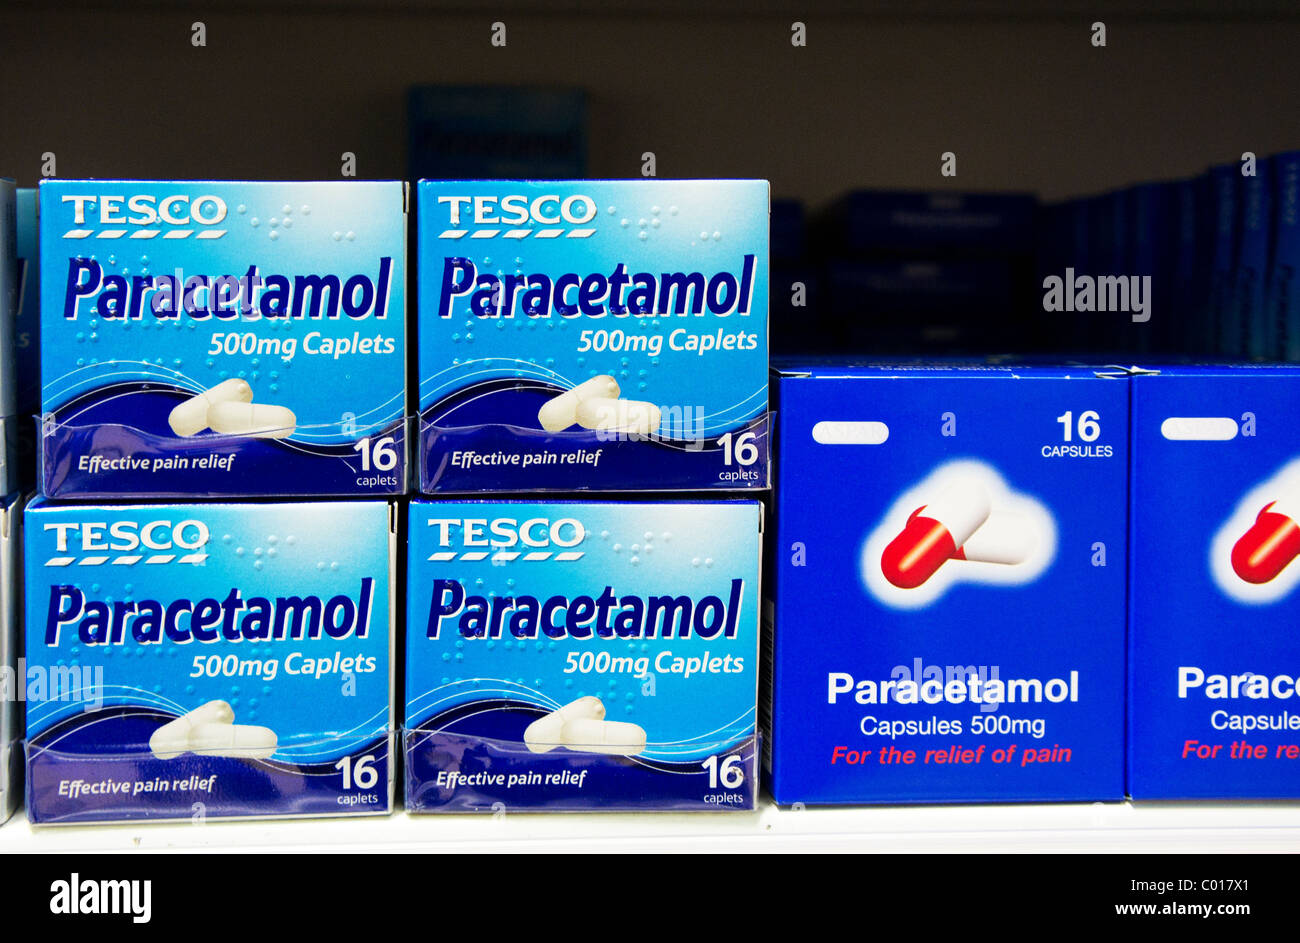 Pacchetti di ' il proprio marchio ' paracetamolo compresse in un negozio Tesco, Regno Unito Foto Stock